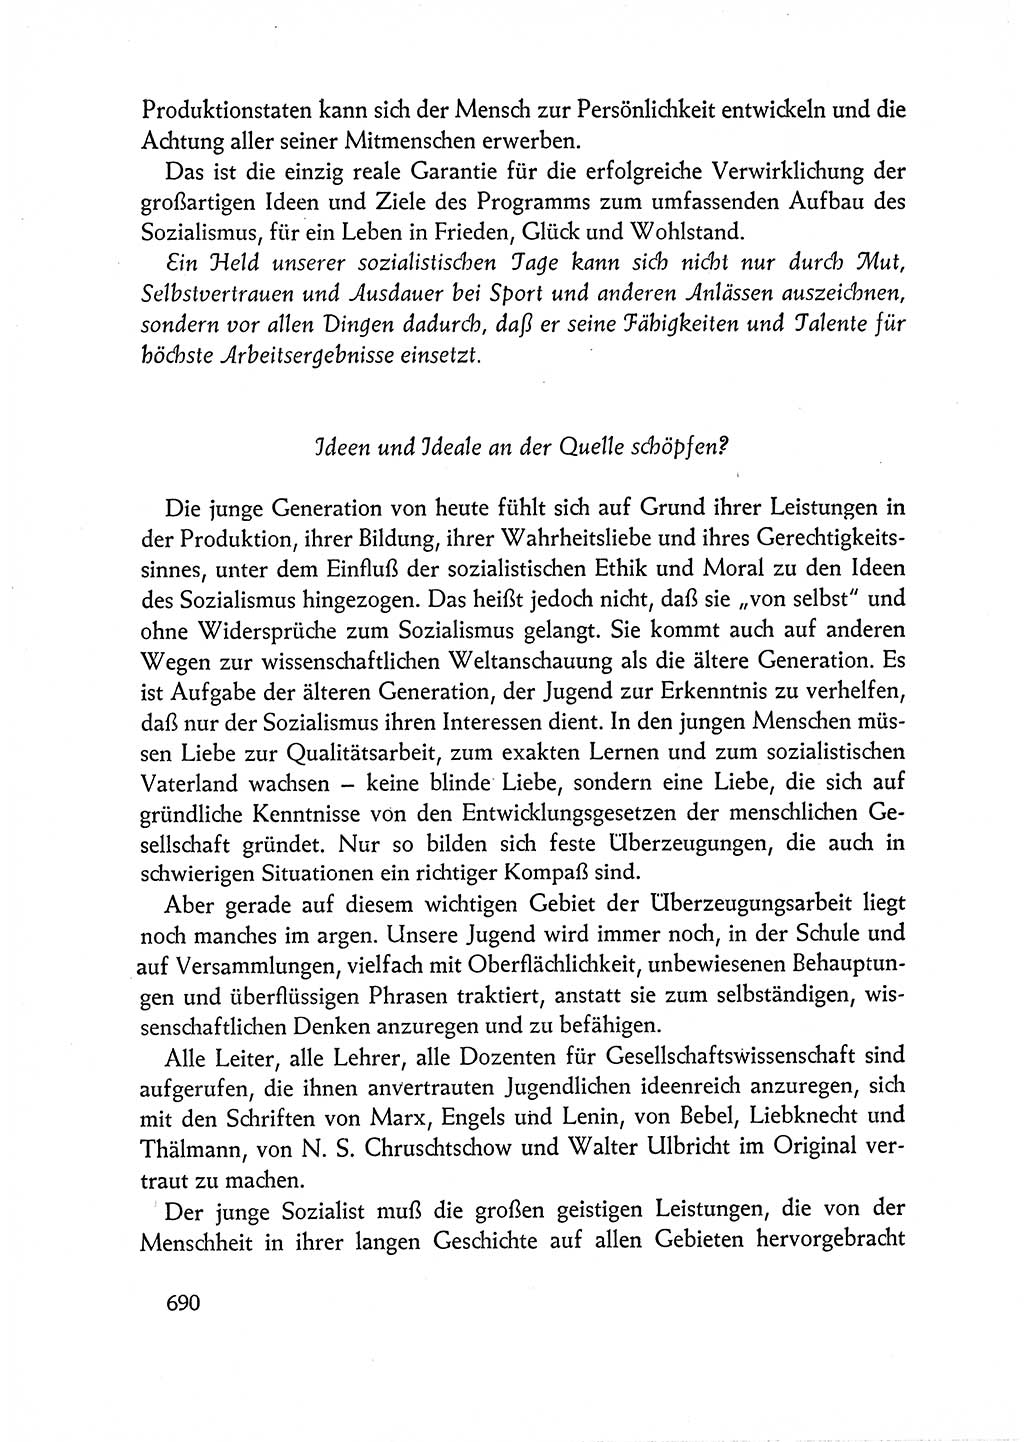 Dokumente der Sozialistischen Einheitspartei Deutschlands (SED) [Deutsche Demokratische Republik (DDR)] 1962-1963, Seite 690 (Dok. SED DDR 1962-1963, S. 690)